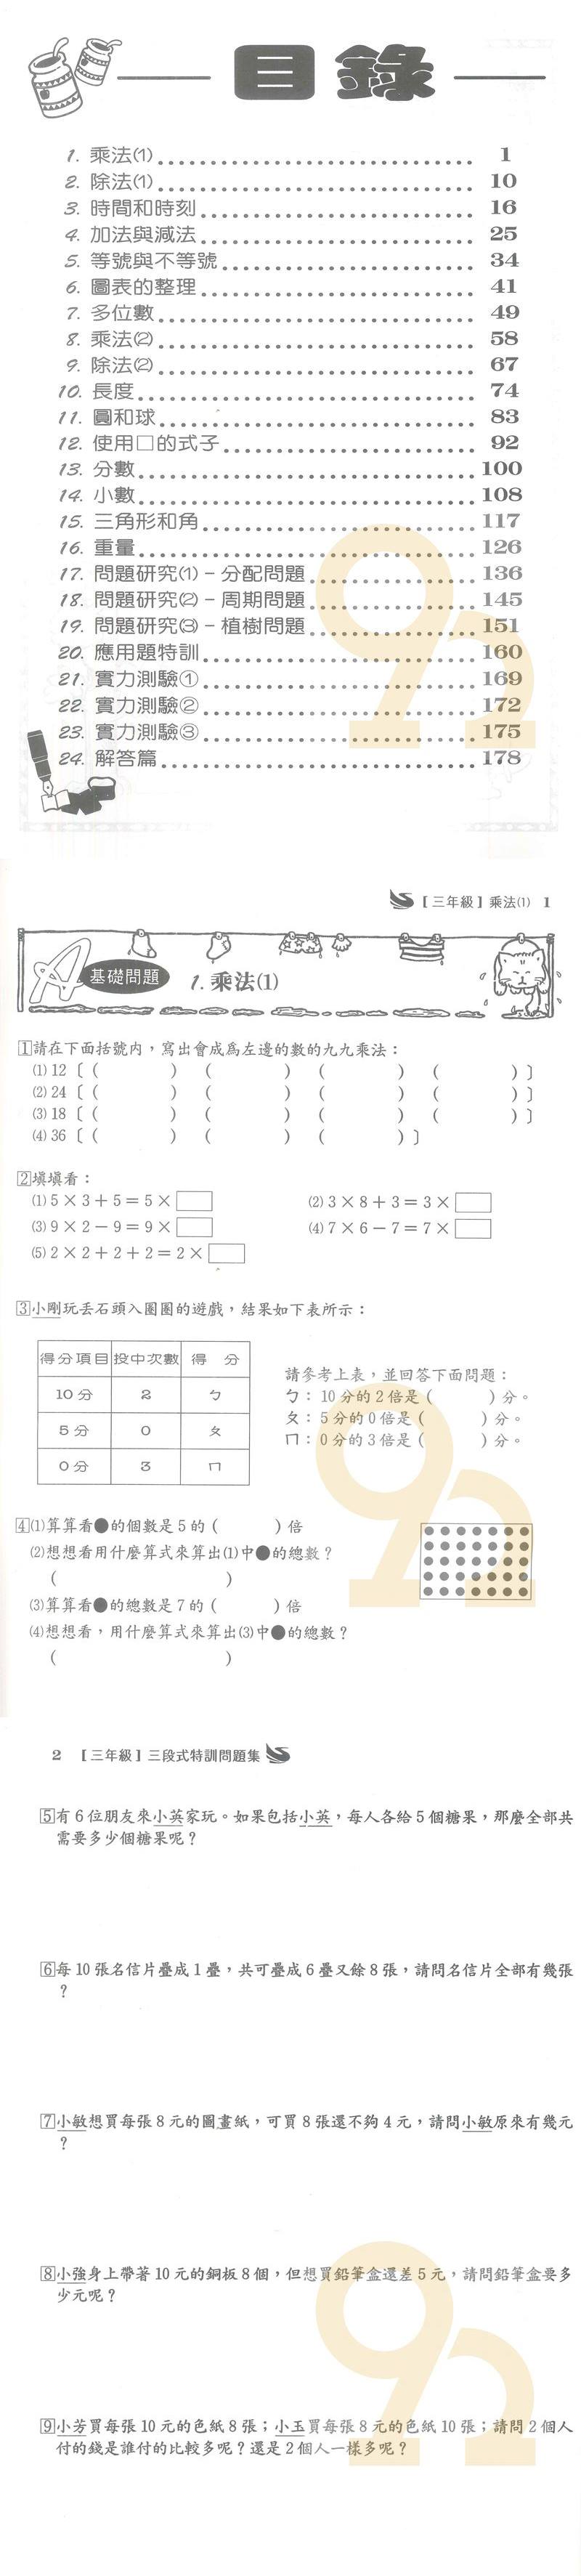 王百世國小3段式數學特訓問題集3年級618購物節 92號book櫃 參考書專賣